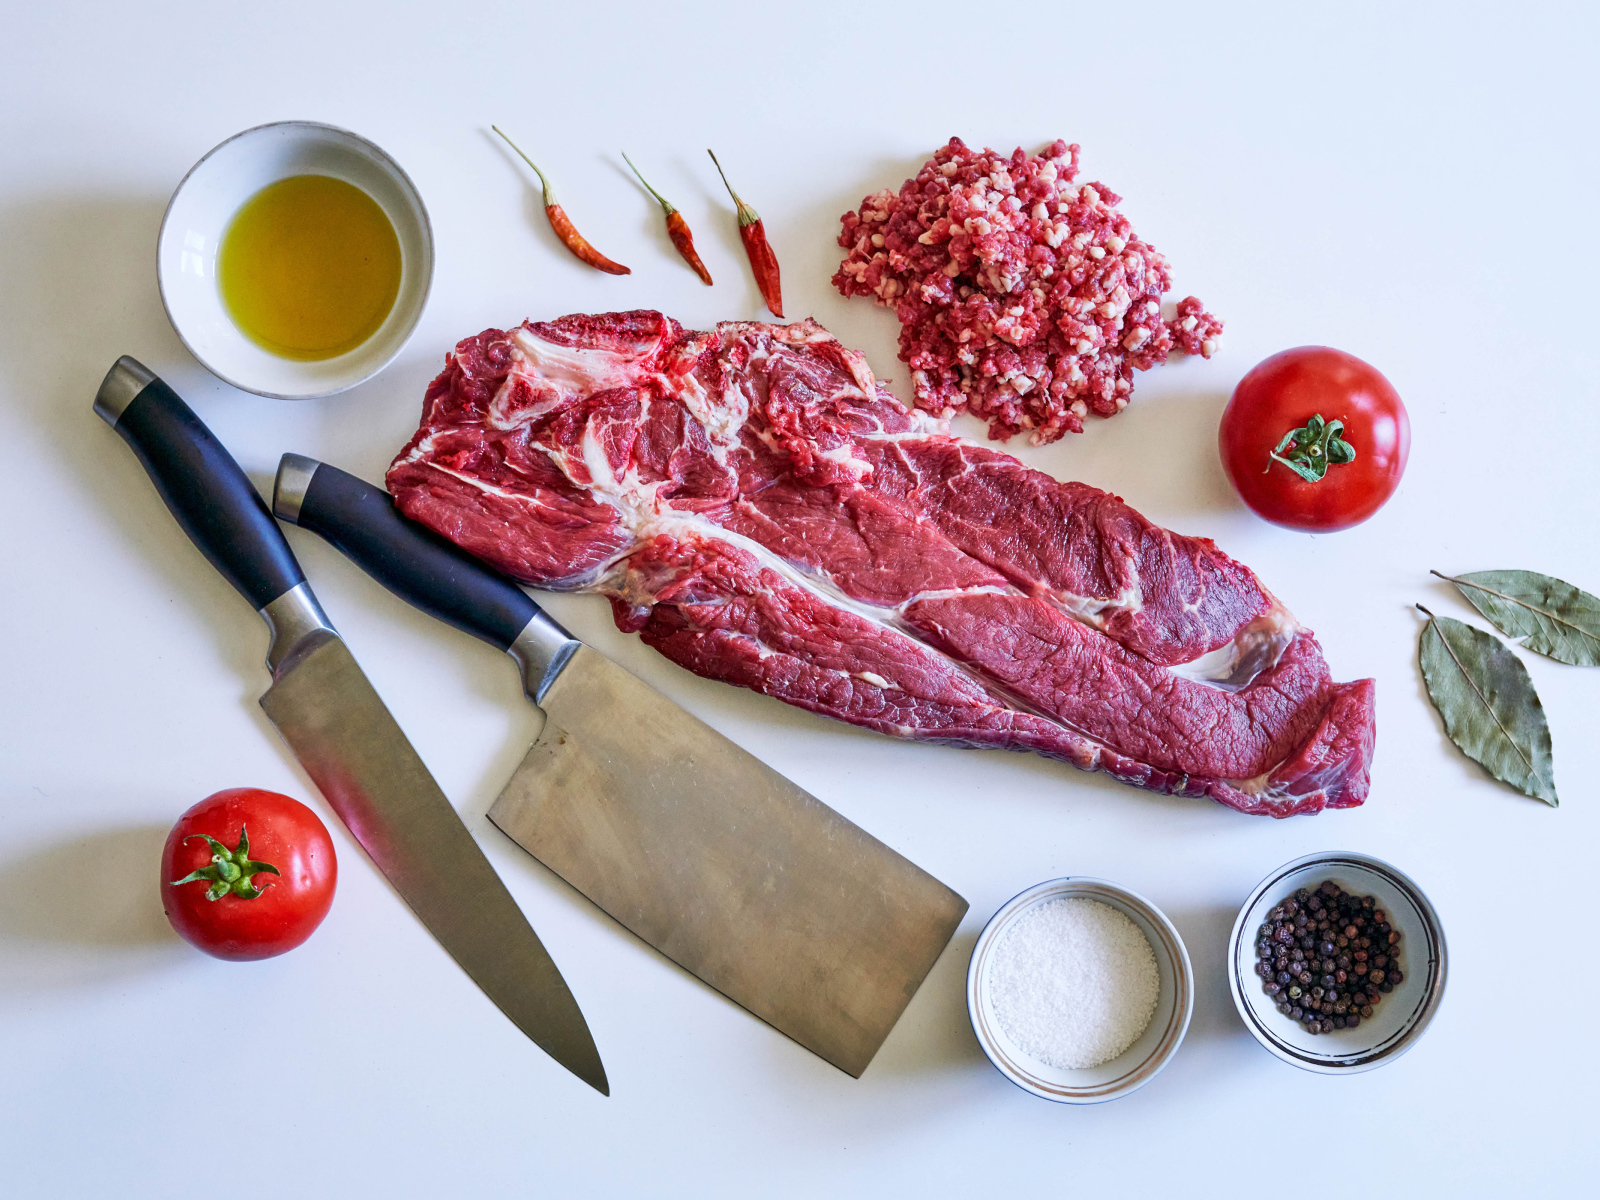 Кусок мяса со специями и ножами на столе 